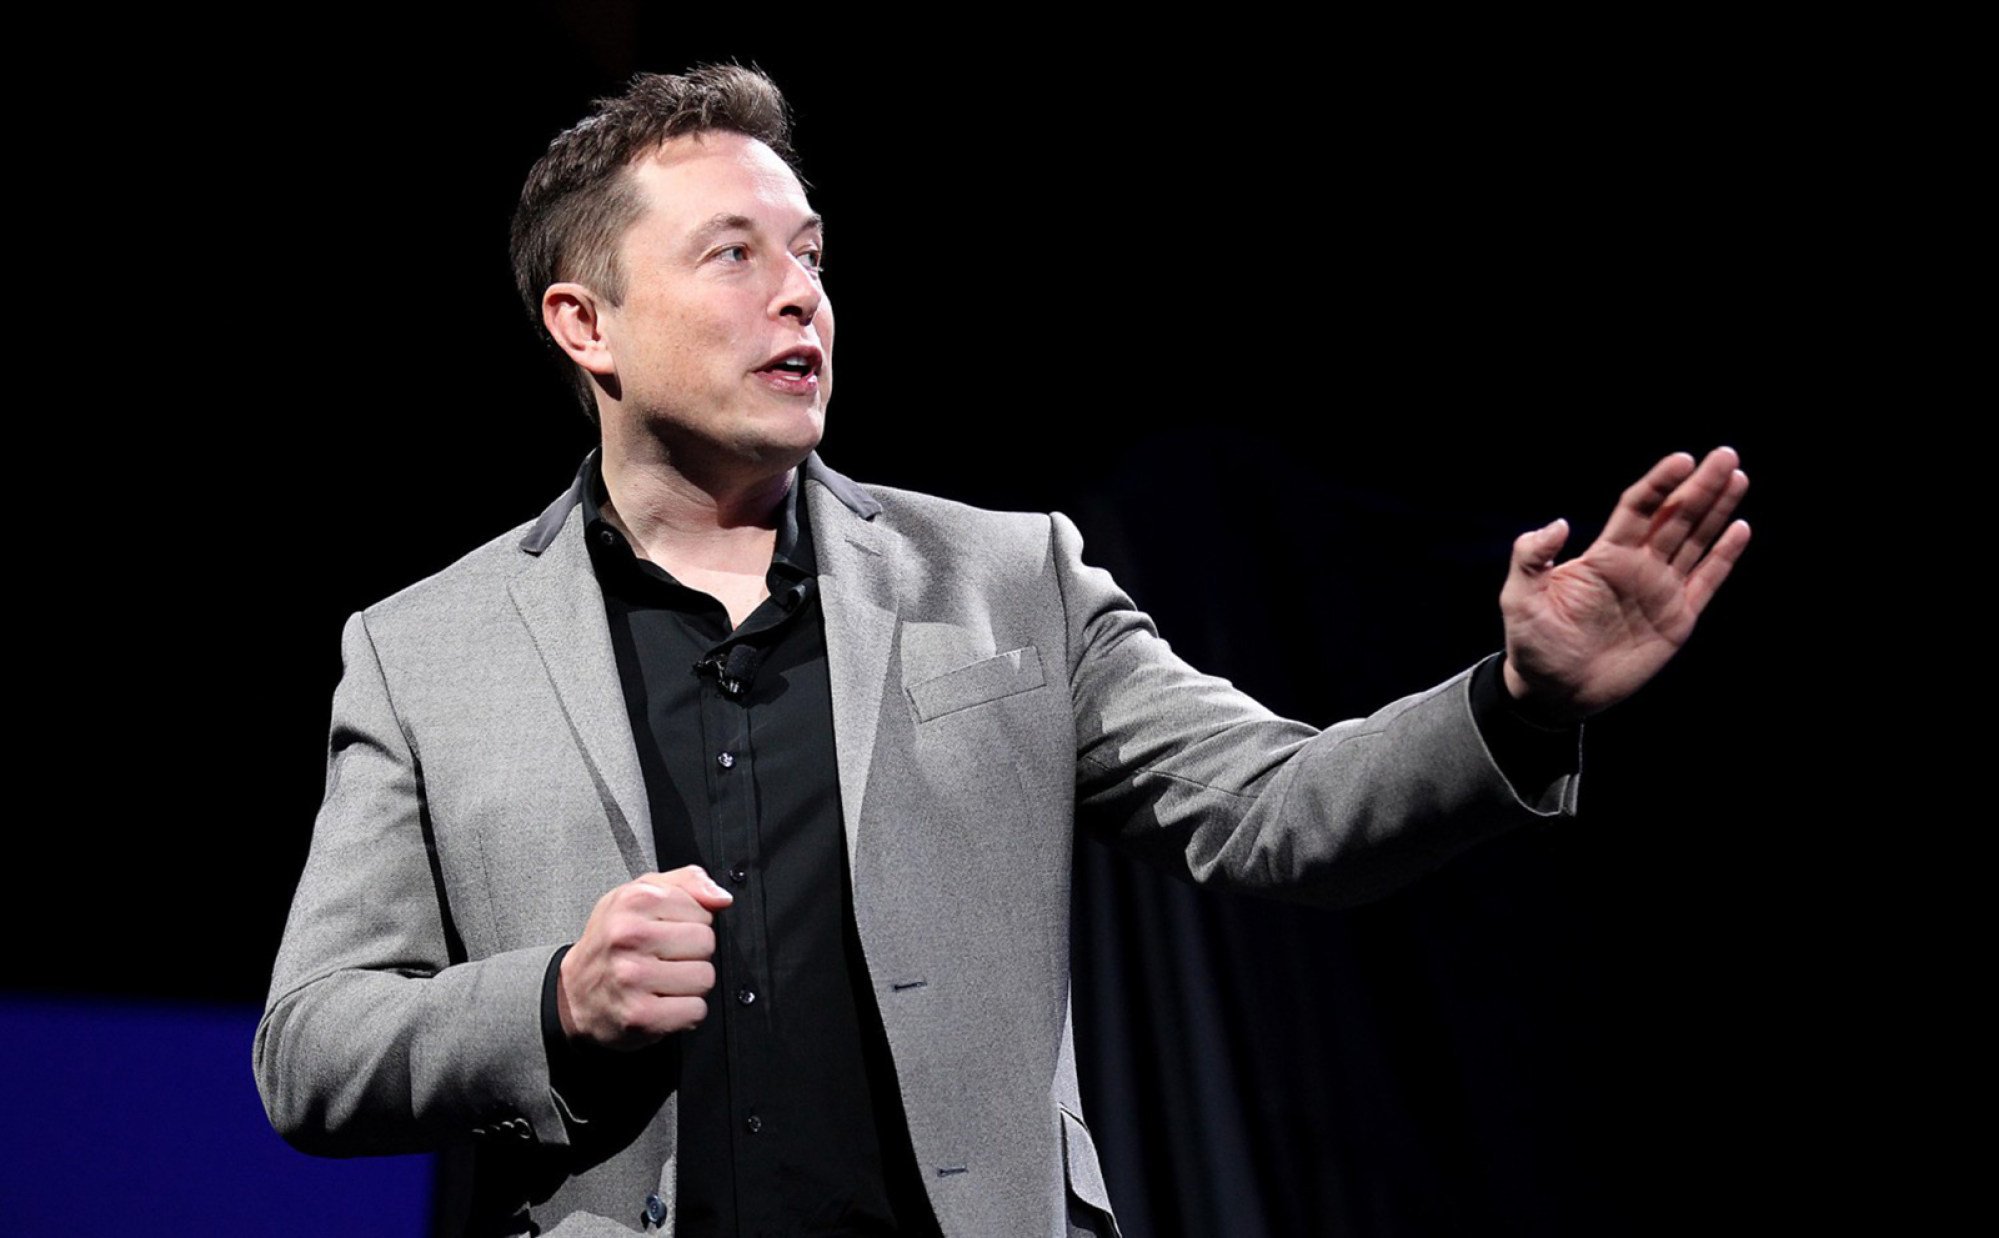 Elon Musk đã gây dựng được khối tài sản ở California trị giá khoảng 180 tỷ USD vào thời điểm viết bài, lớn nhất từng thấy ở bang này. Ảnh: @TNS.